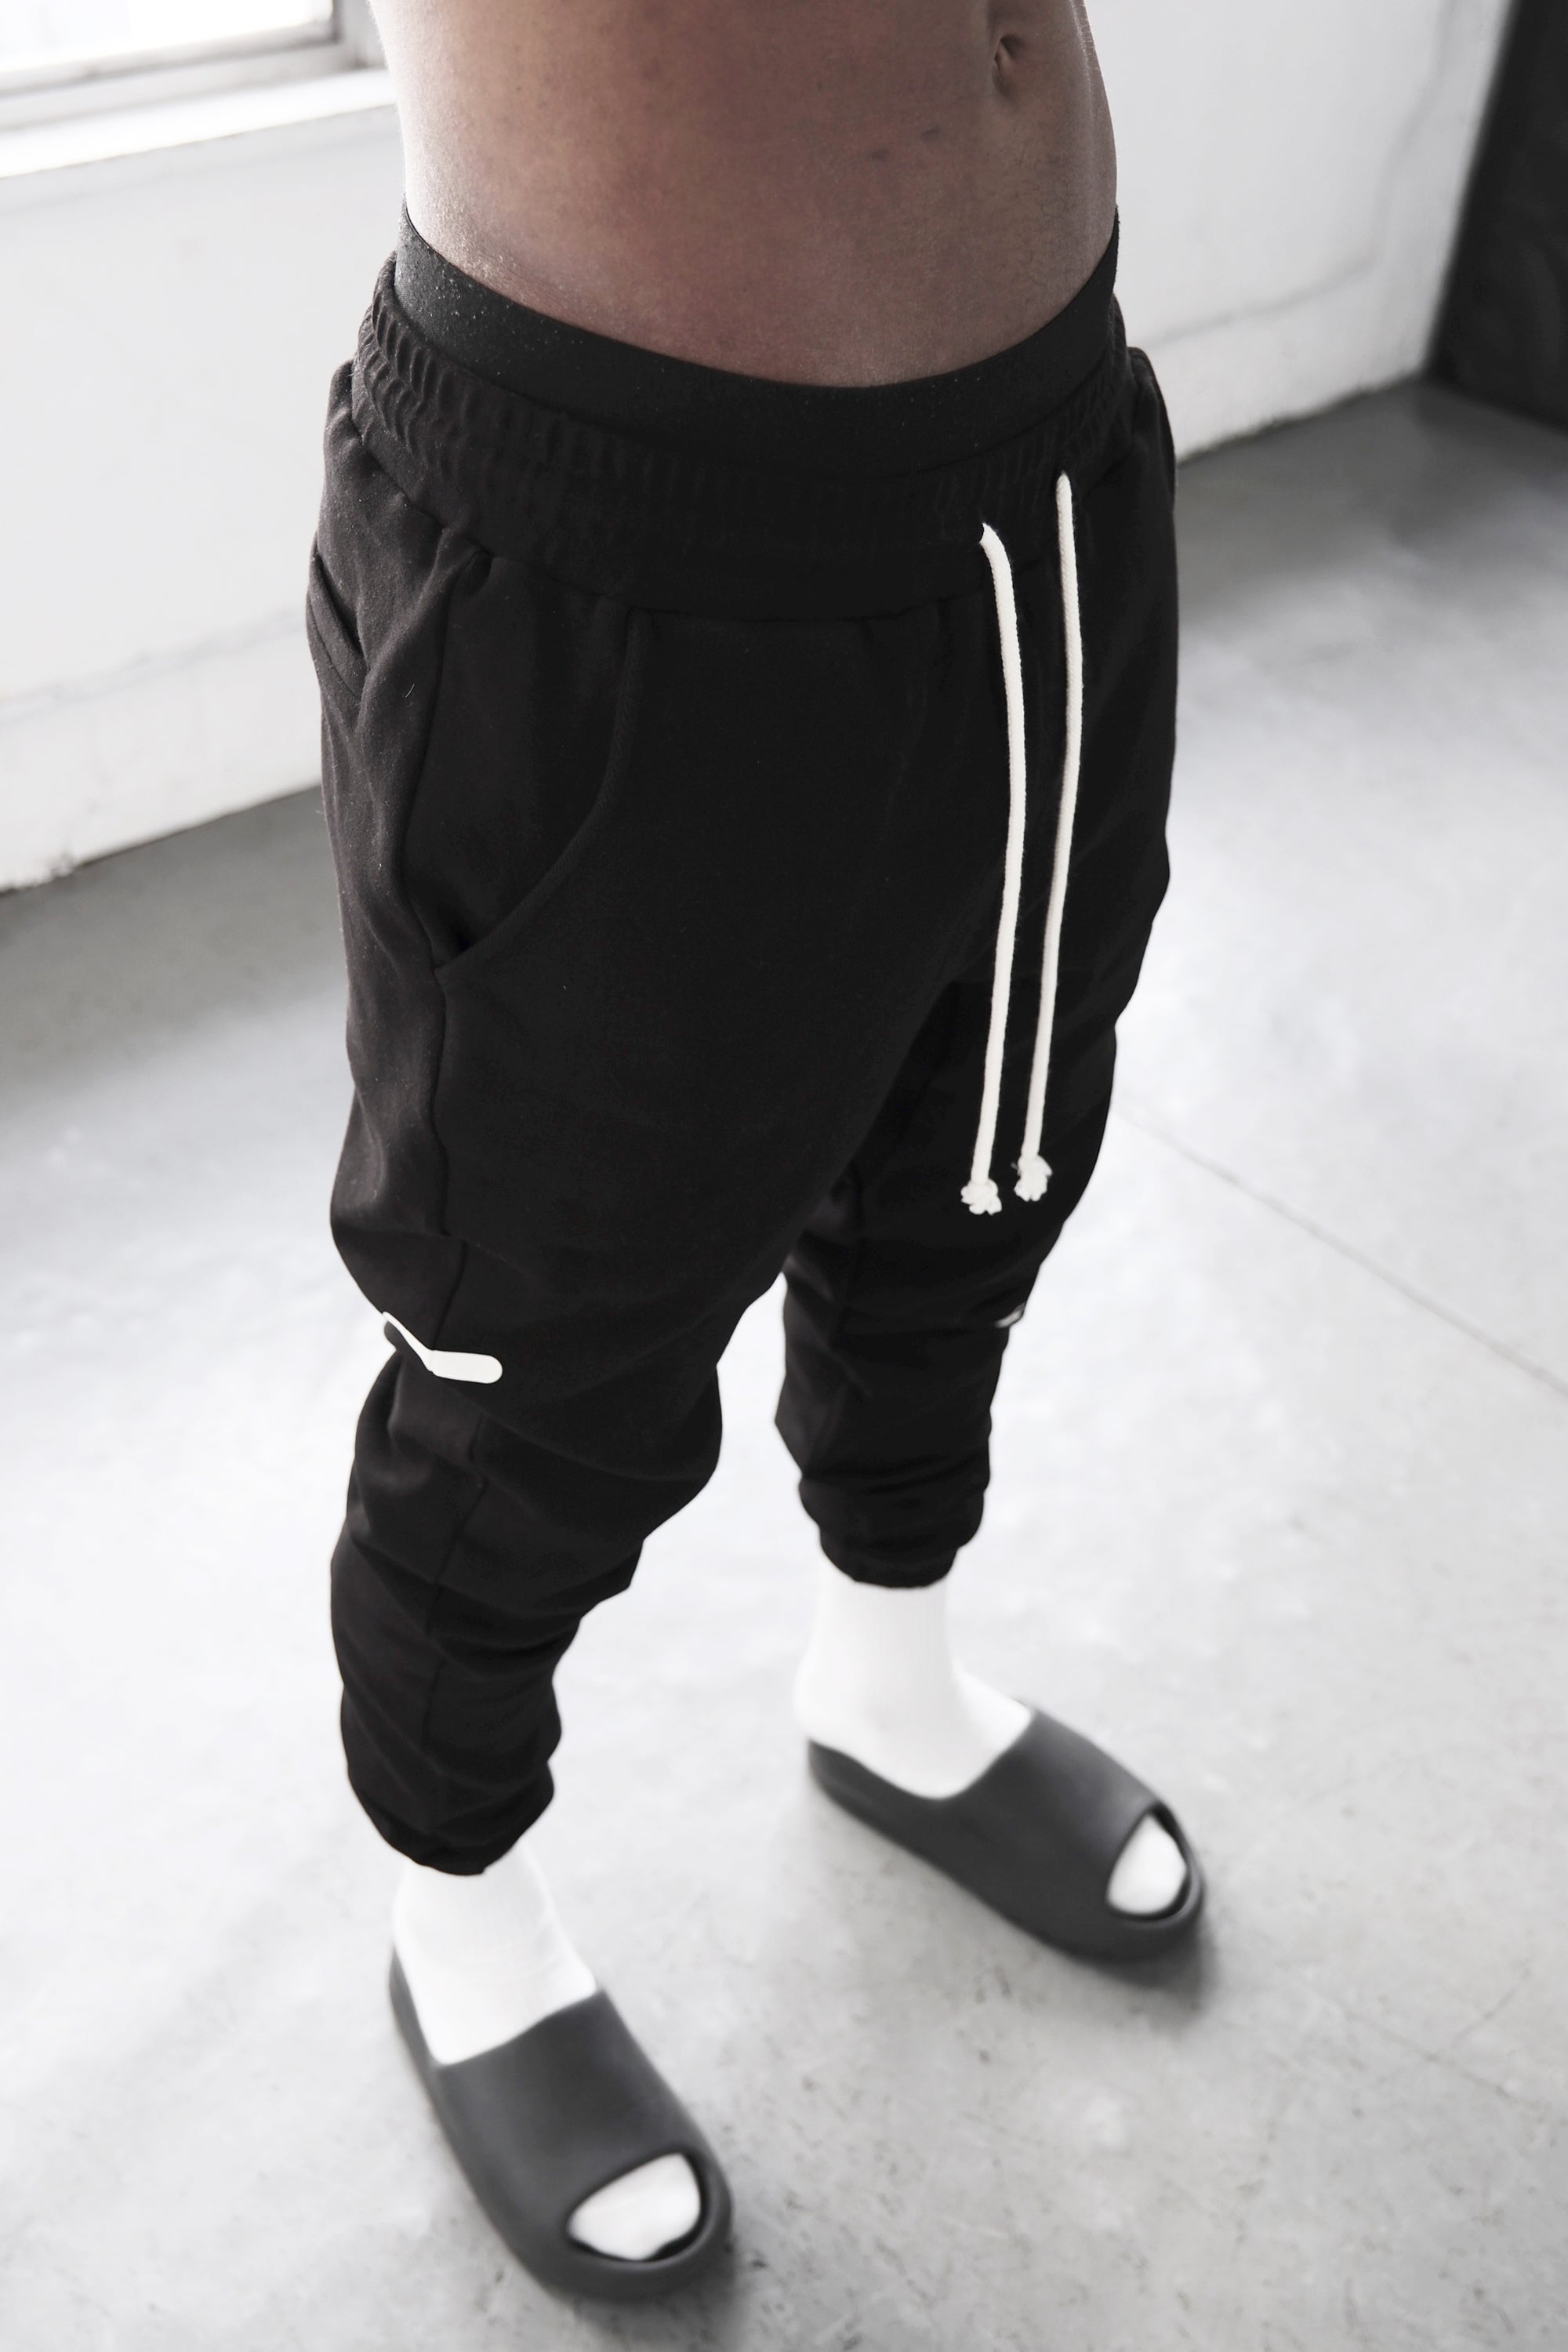 Pvot Premium Stretch Sweat Pants (Black)